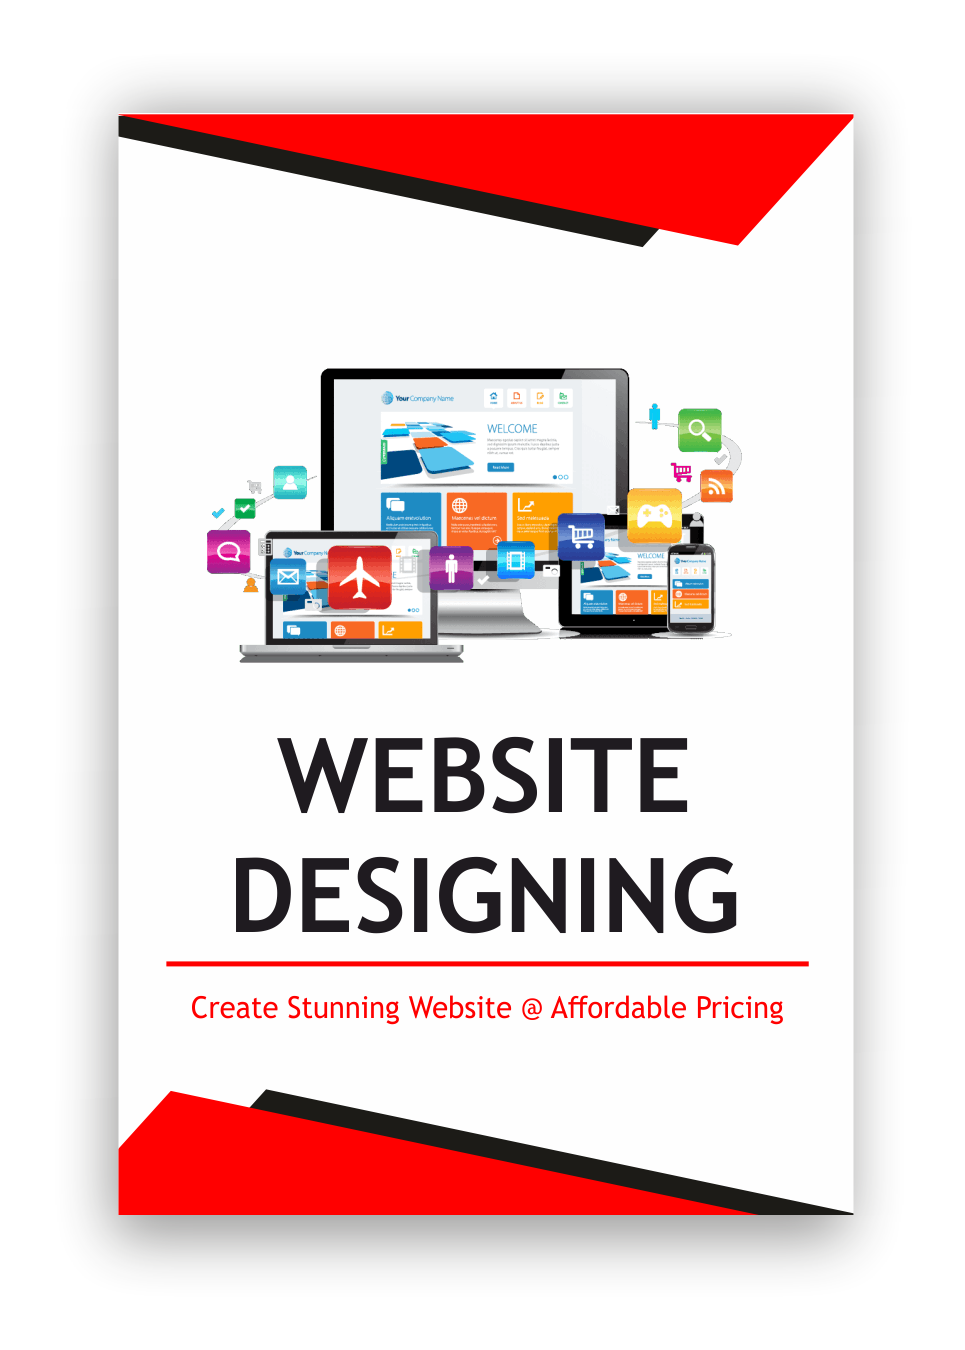 WEBSITE DESIGNING